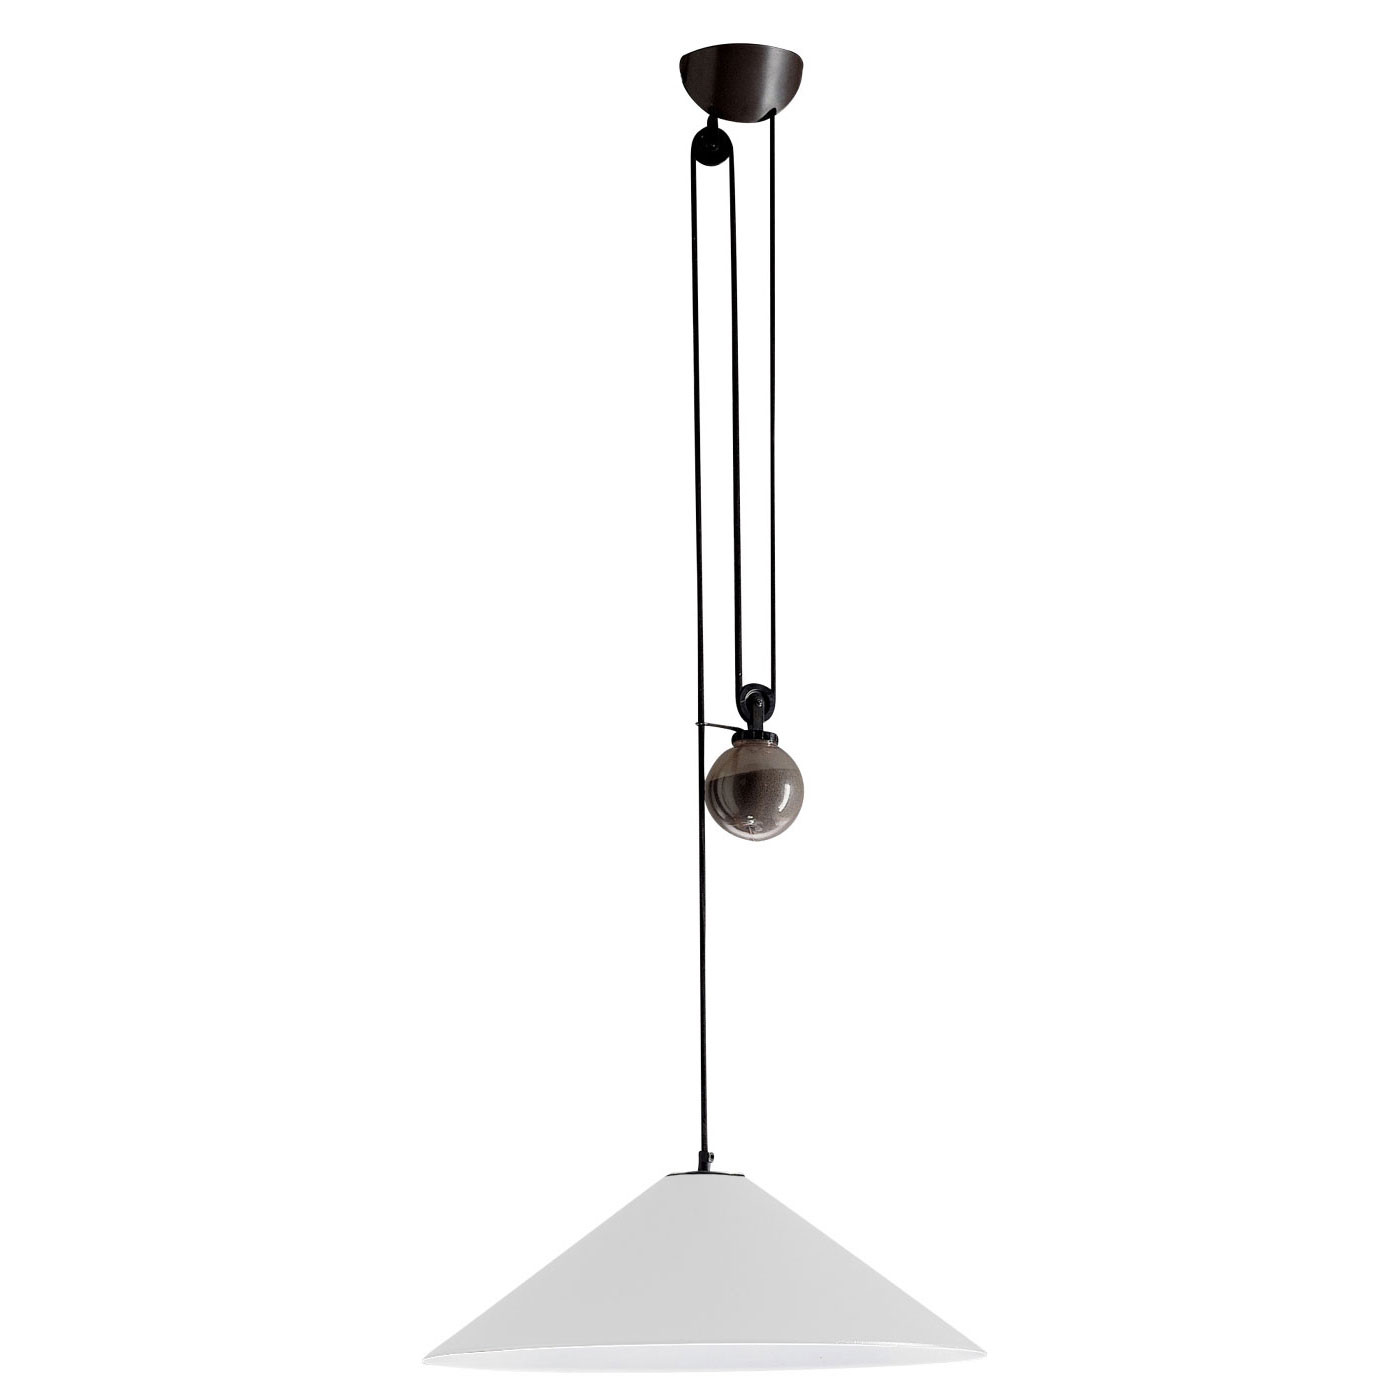 AGGREGATO SALISCENDI - CONE suspension lamp with counterweight